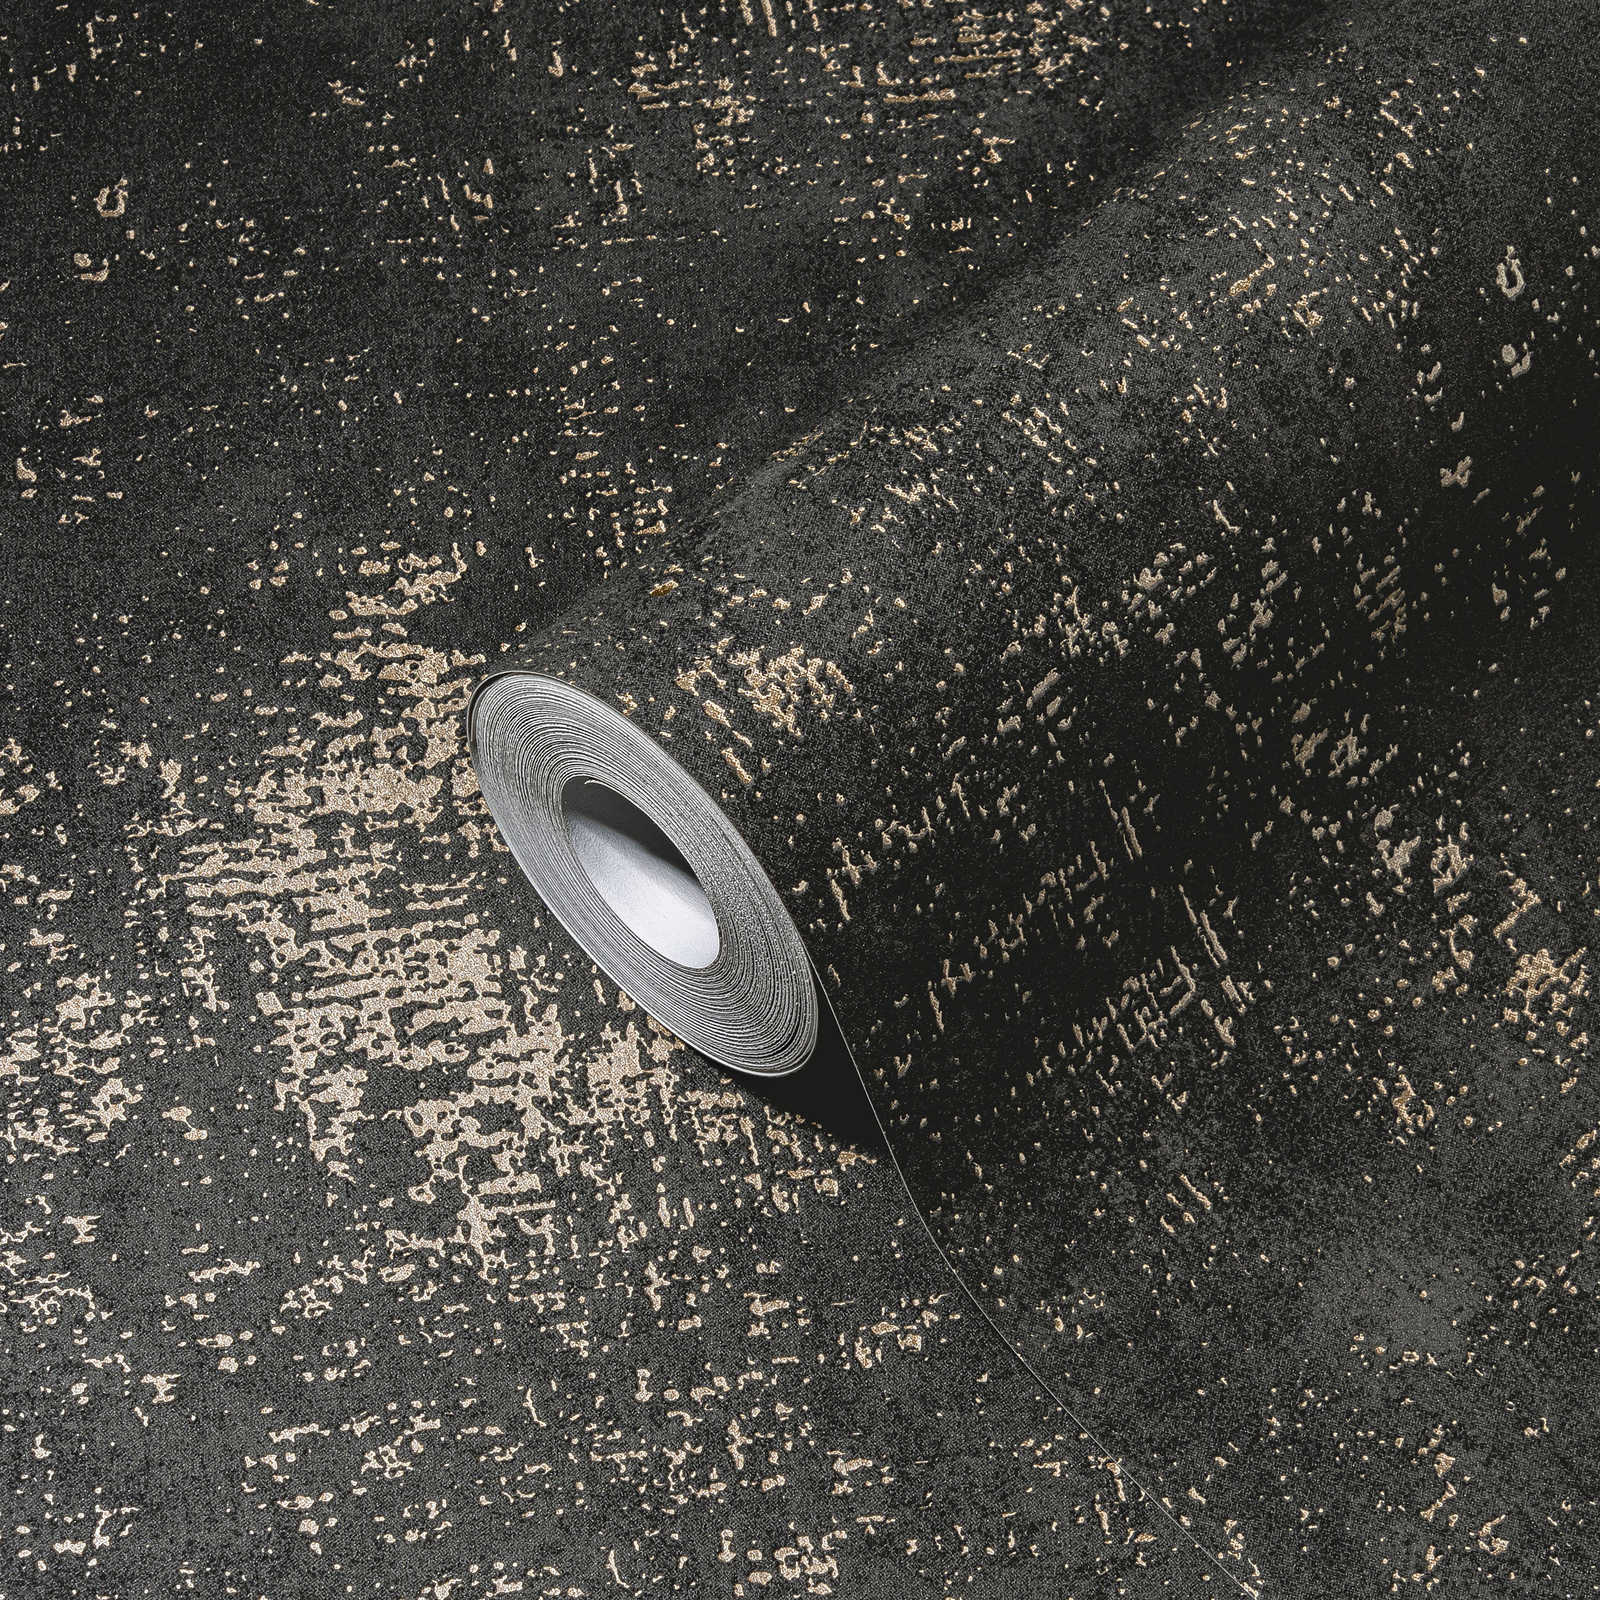             Black wallpaper rustic textured look with metallic effect
        